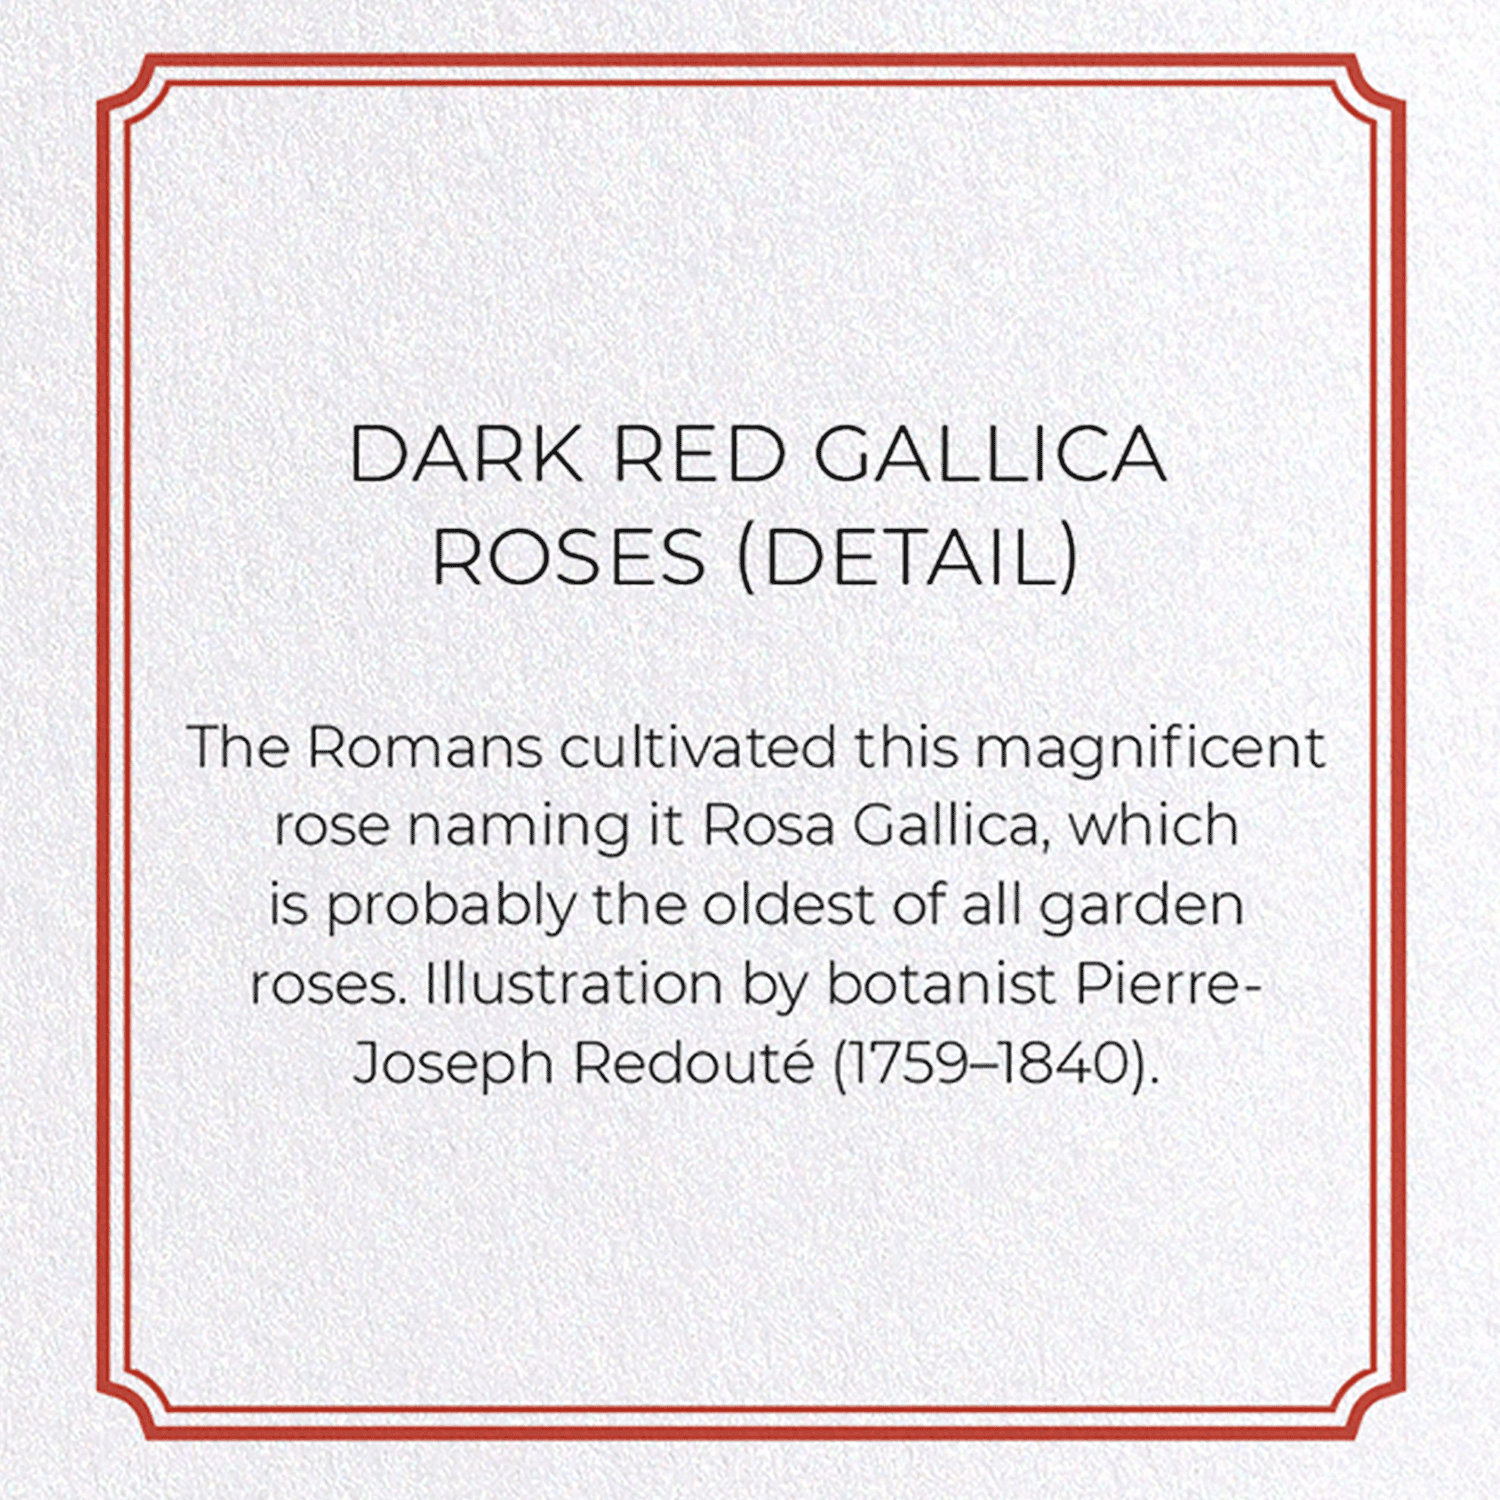 DARK RED GALLICA ROSES